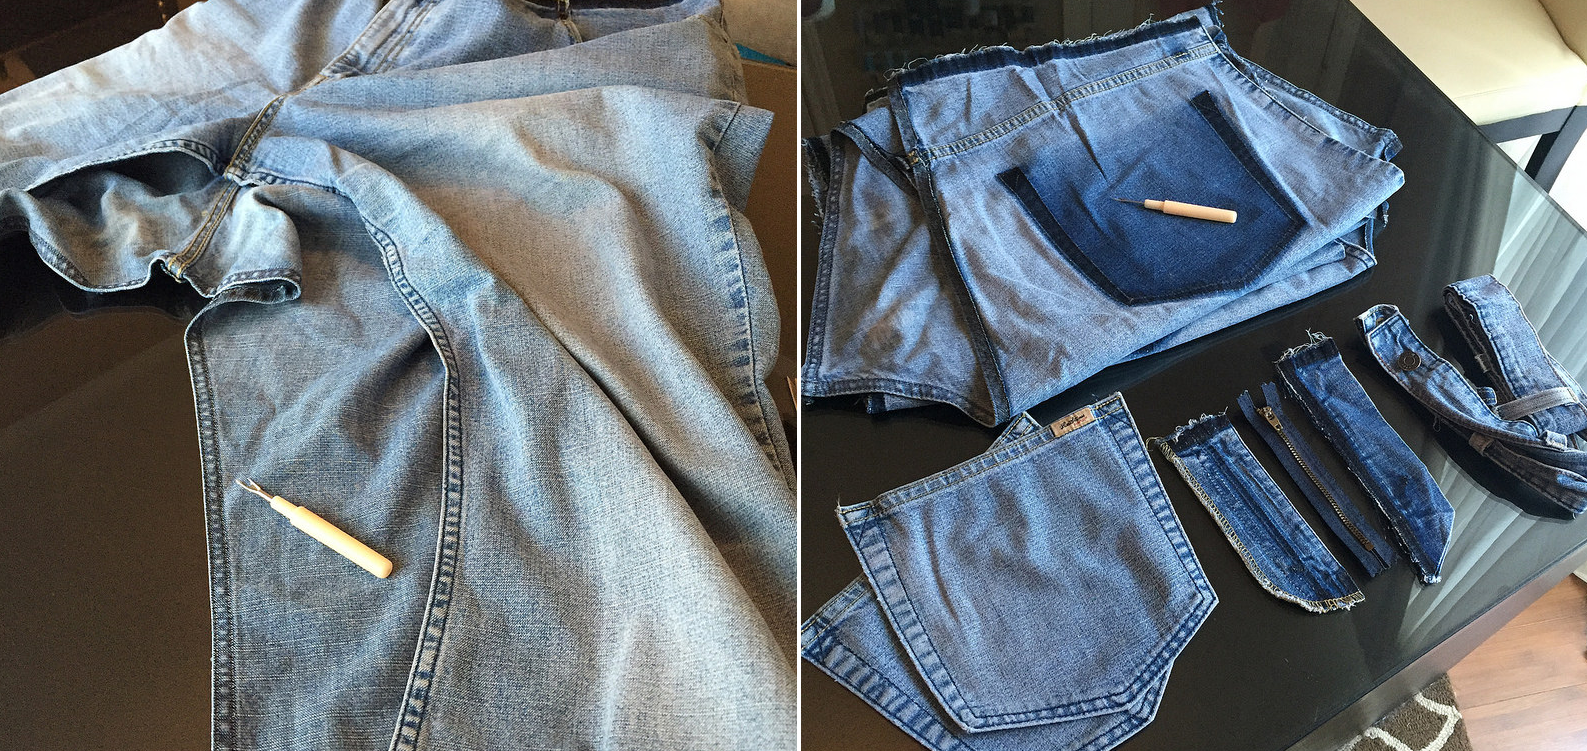 Como hacer blusas modelo túnica con jeans reciclados ¡Perfecta para el verano!3